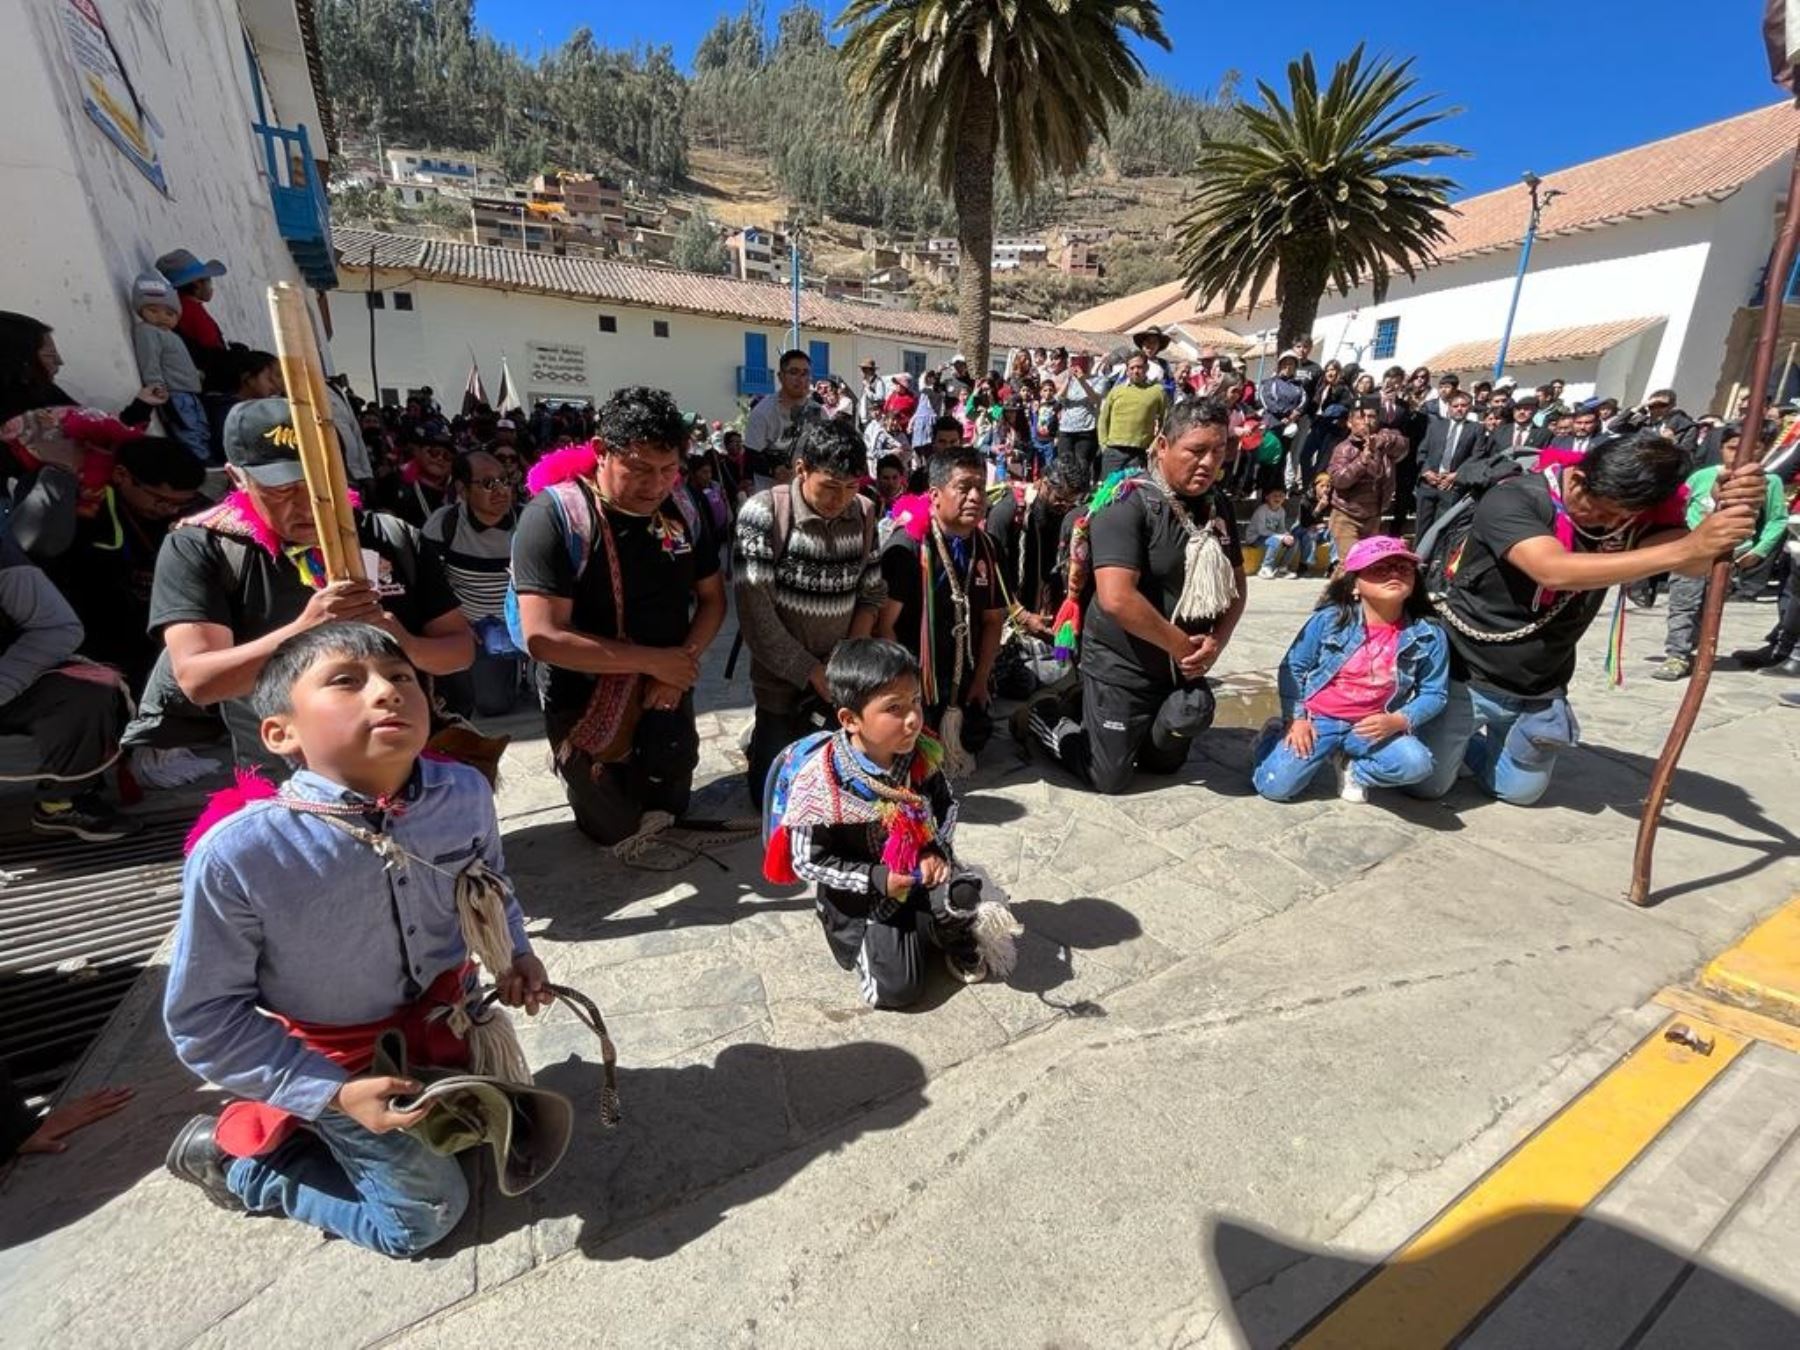 Con peregrinaje y misas, Paucartambo inicia las actividades festivas en honor a la Virgen del Carmen, patrona de esa ciudad ubicada en Cusco. ANDINA/Percy Hurtado Santillán